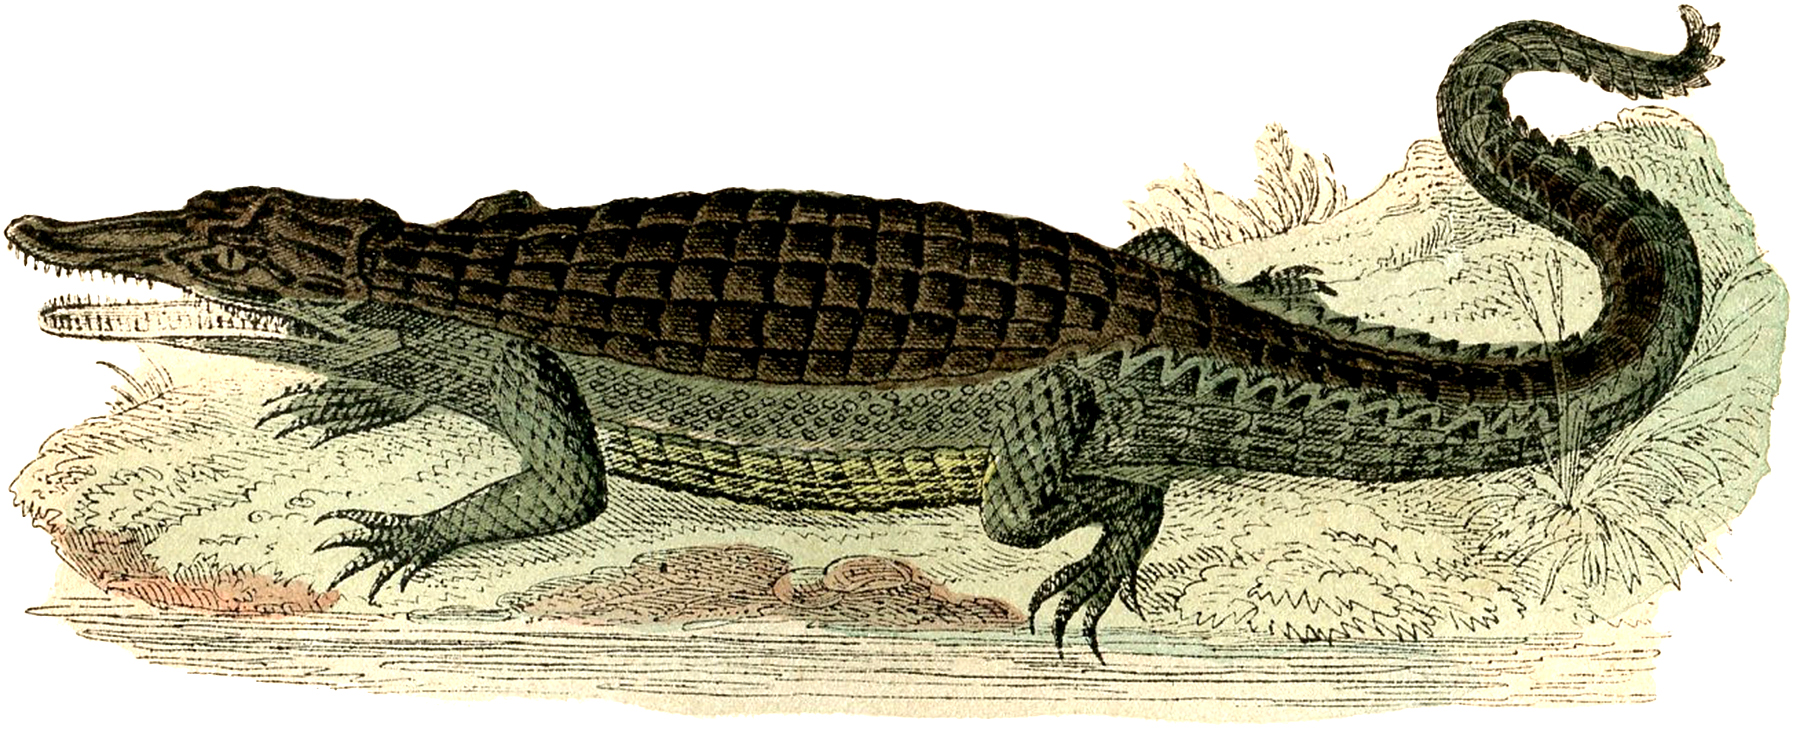 Vintage Alligator Image